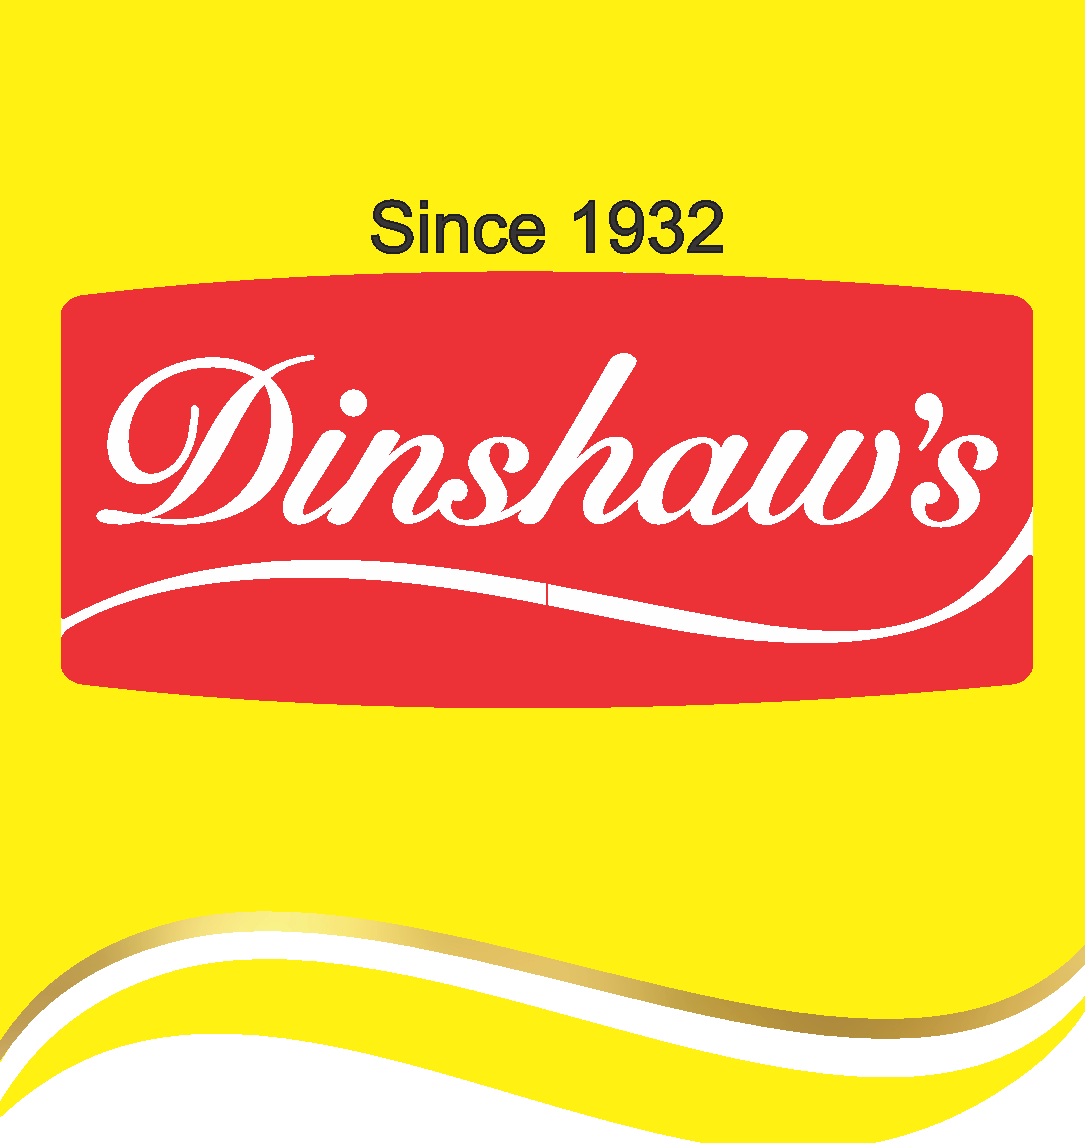 logo Dinshaws